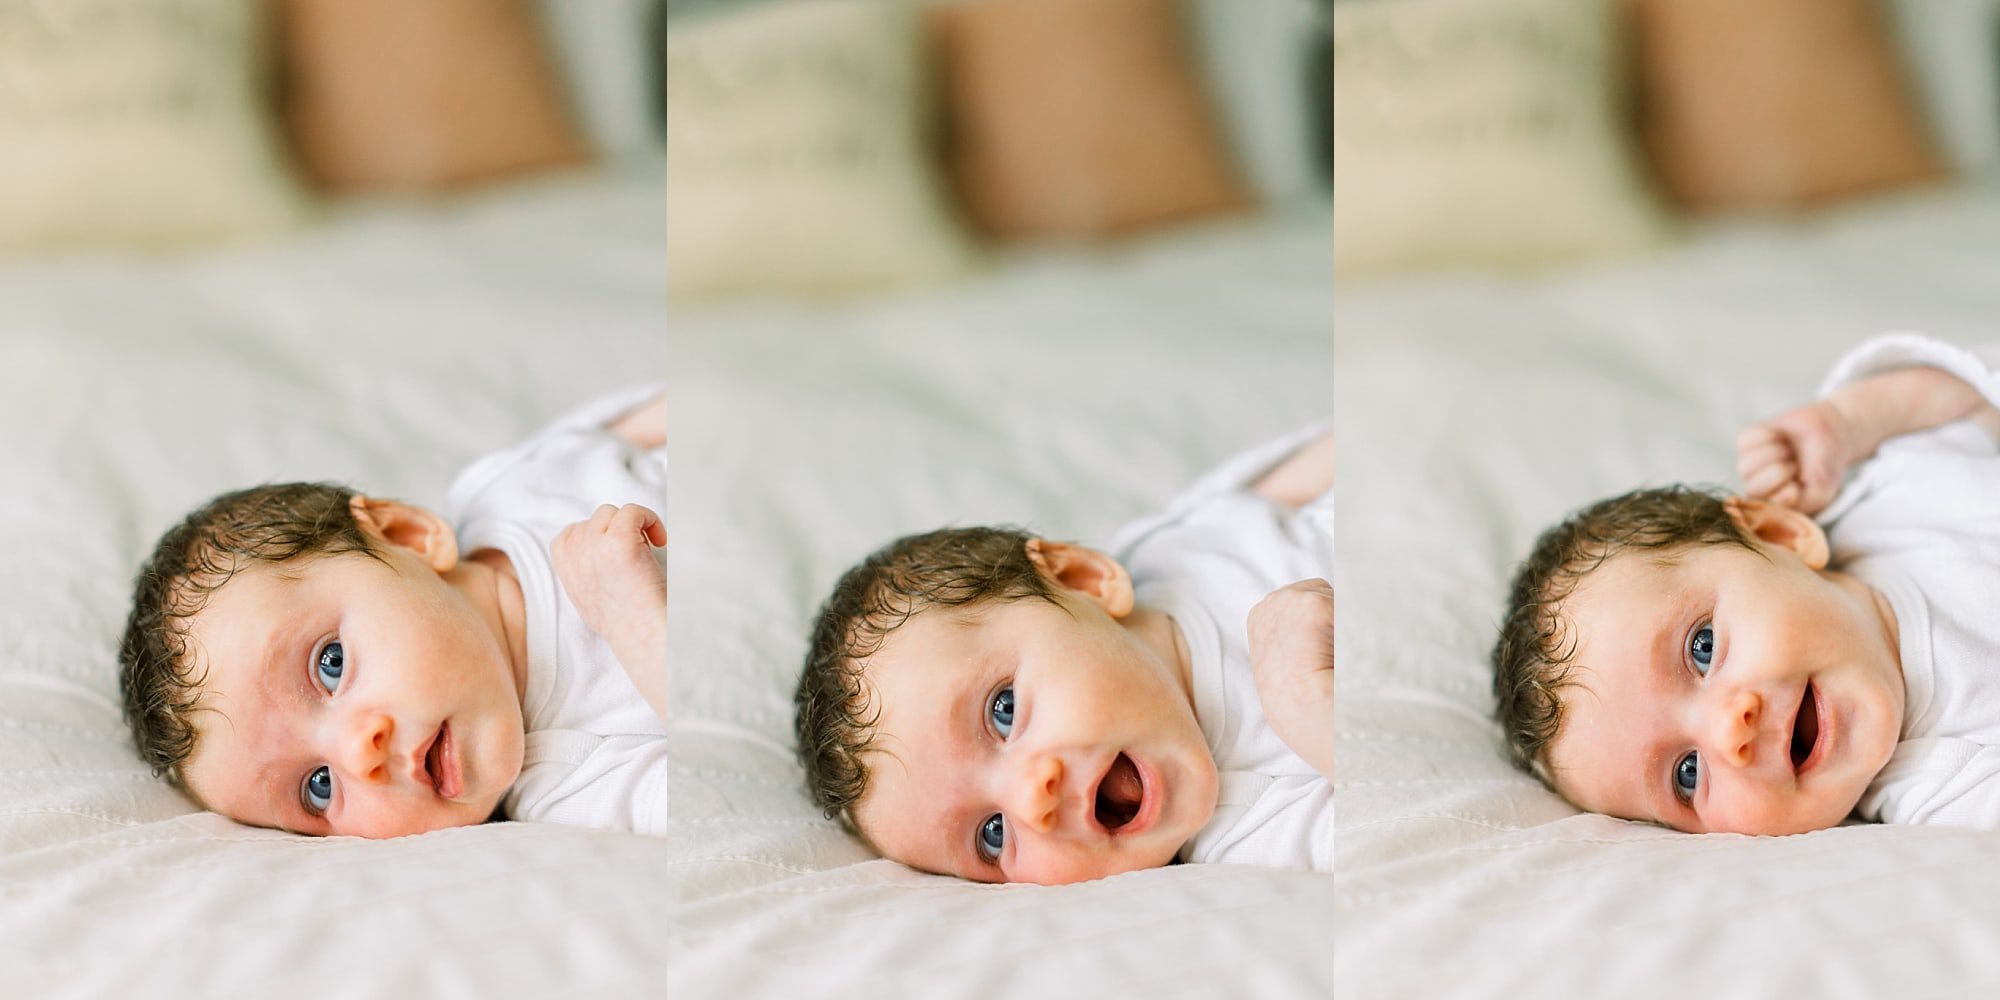 Miami baby girl during newborn photo shoot